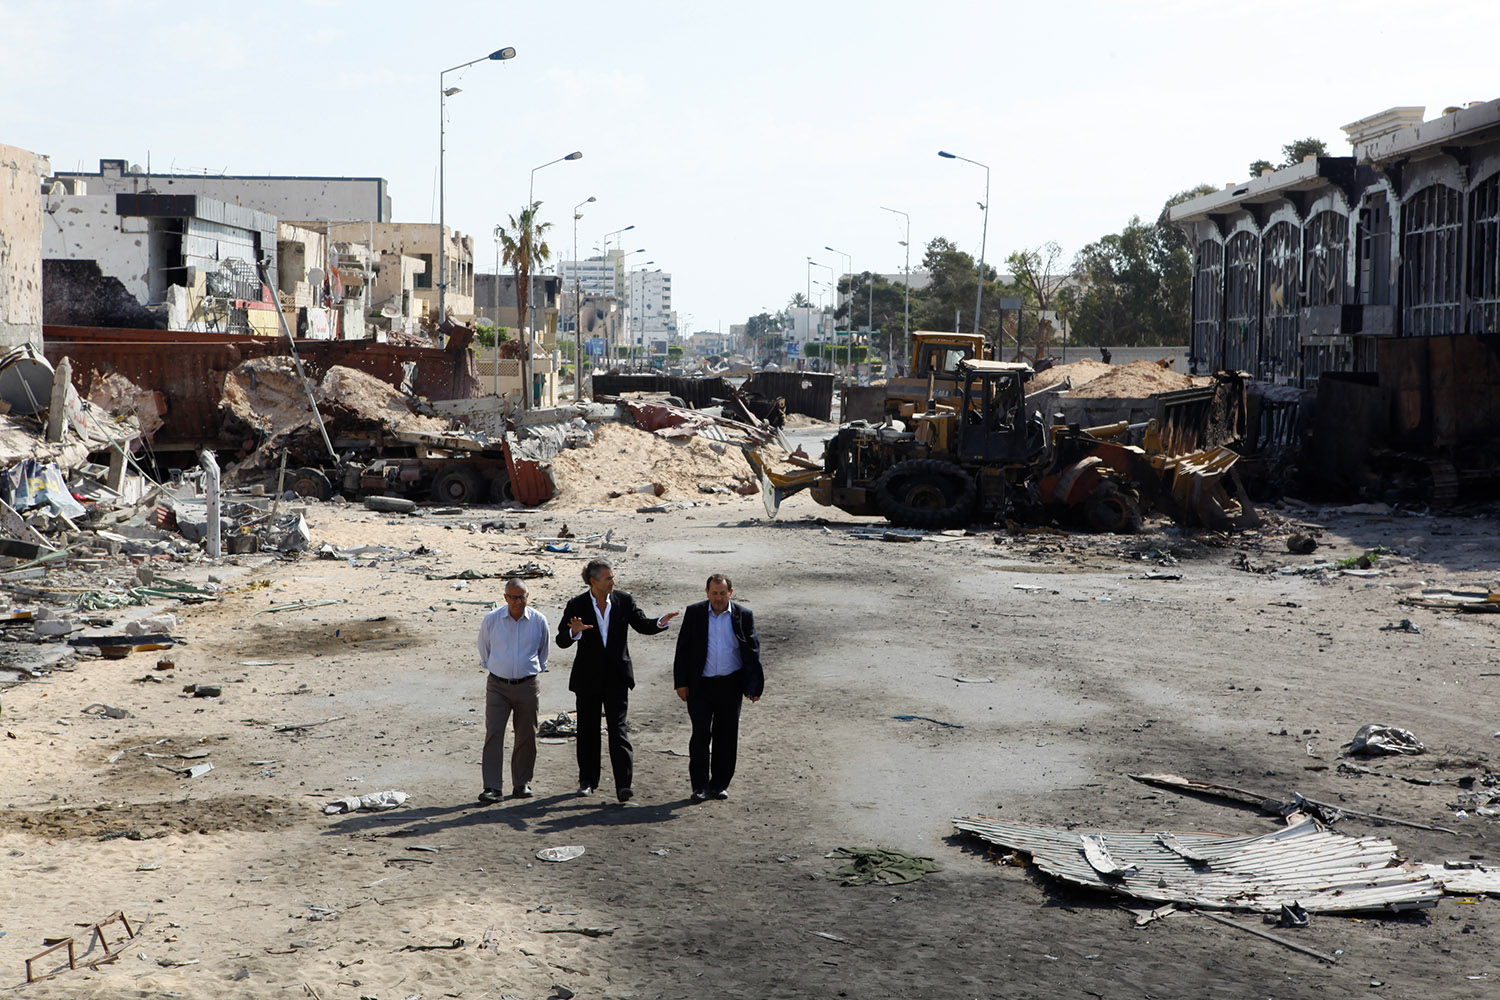 Les forces de Kadhafi se sont acharnées sur la ville de Misrata. Bernard-Henri Lévy marche dans une ville en ruine, déserte, en compagnie de deux hommes.